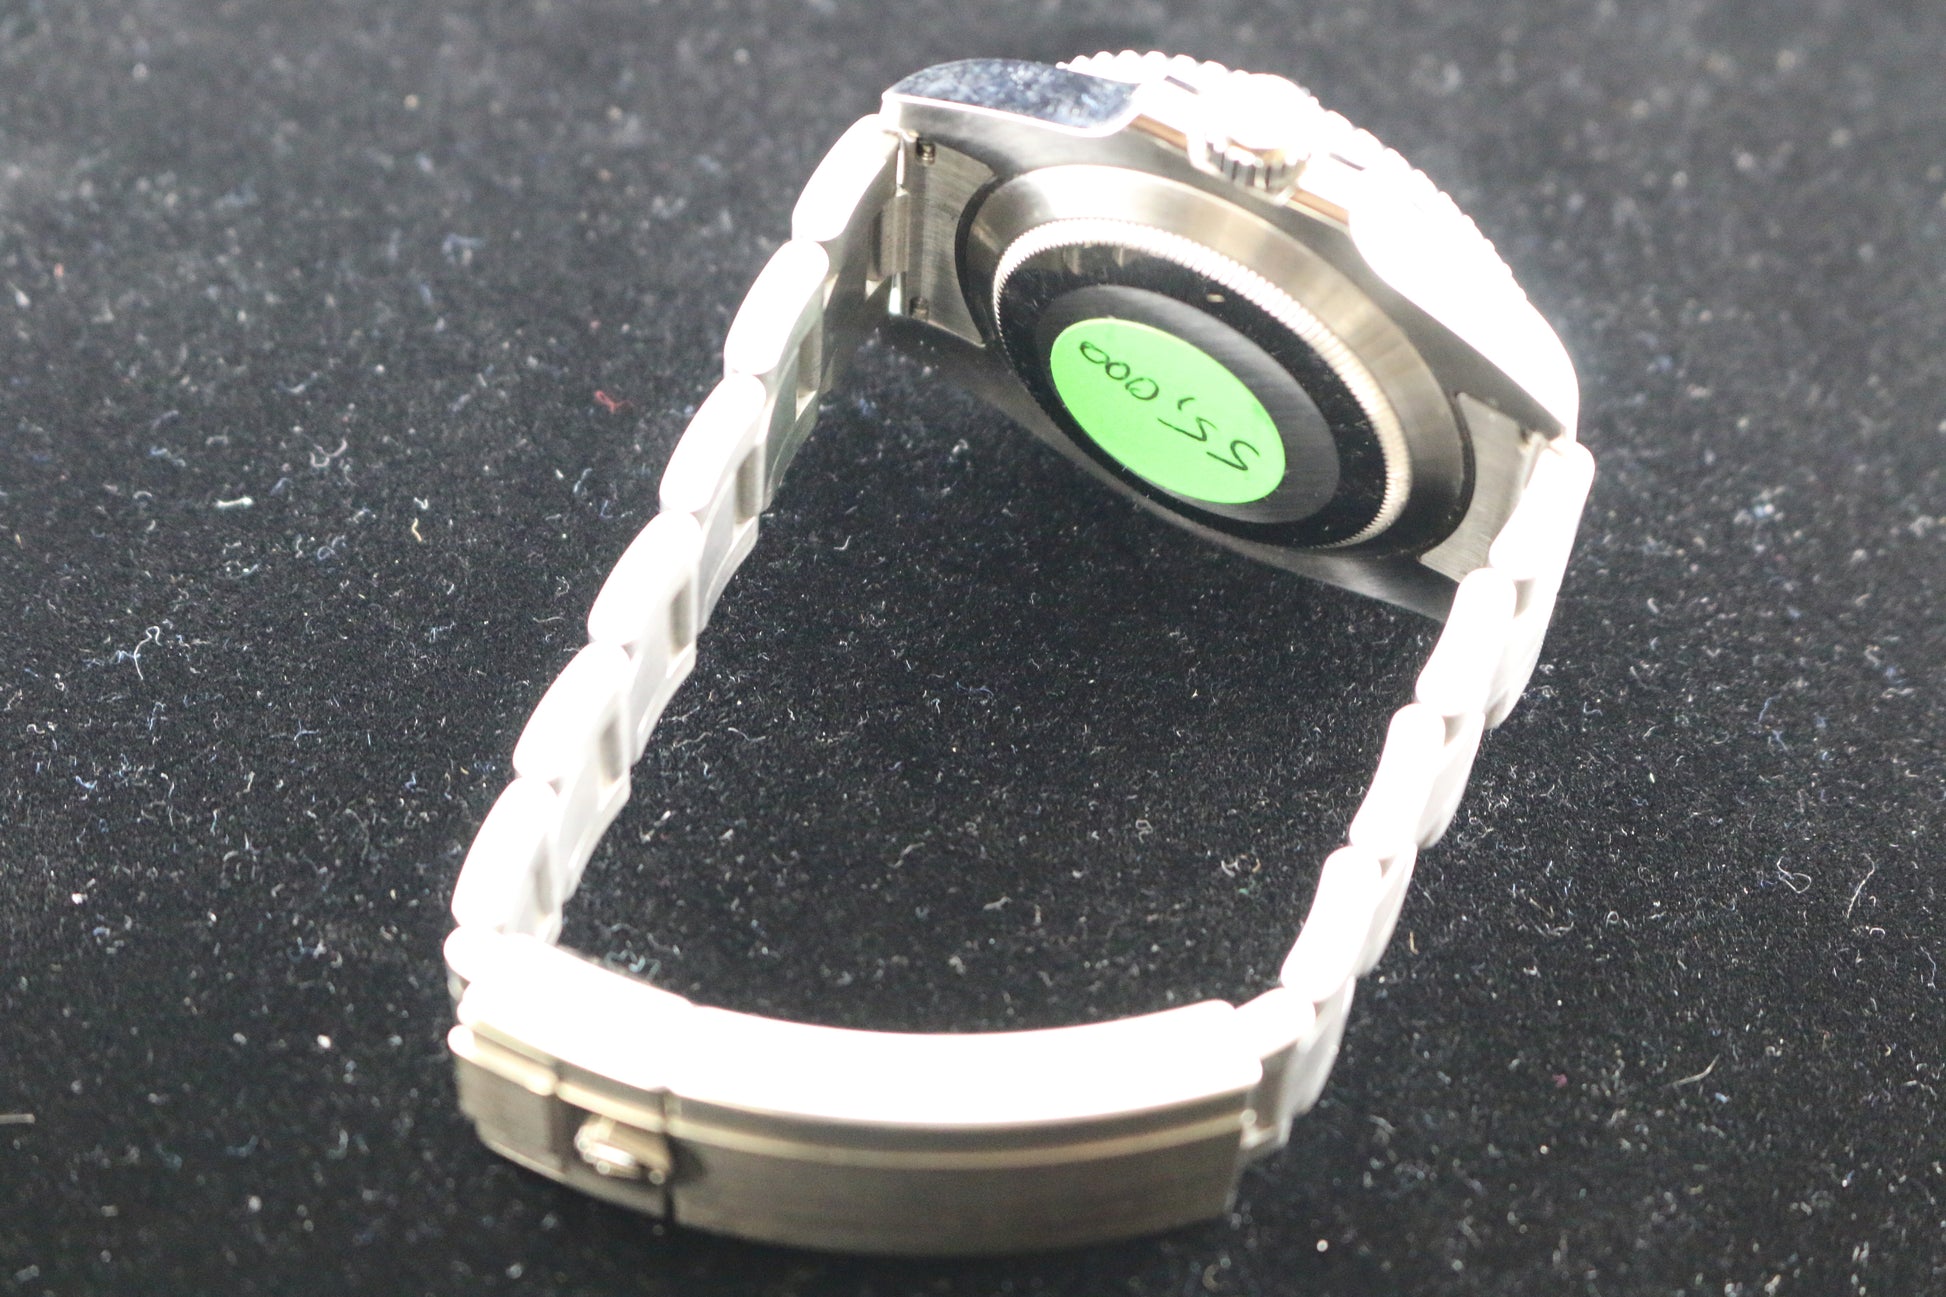 Rolex – Green Submariner 'Hulk' – Lifestyle Timepiece